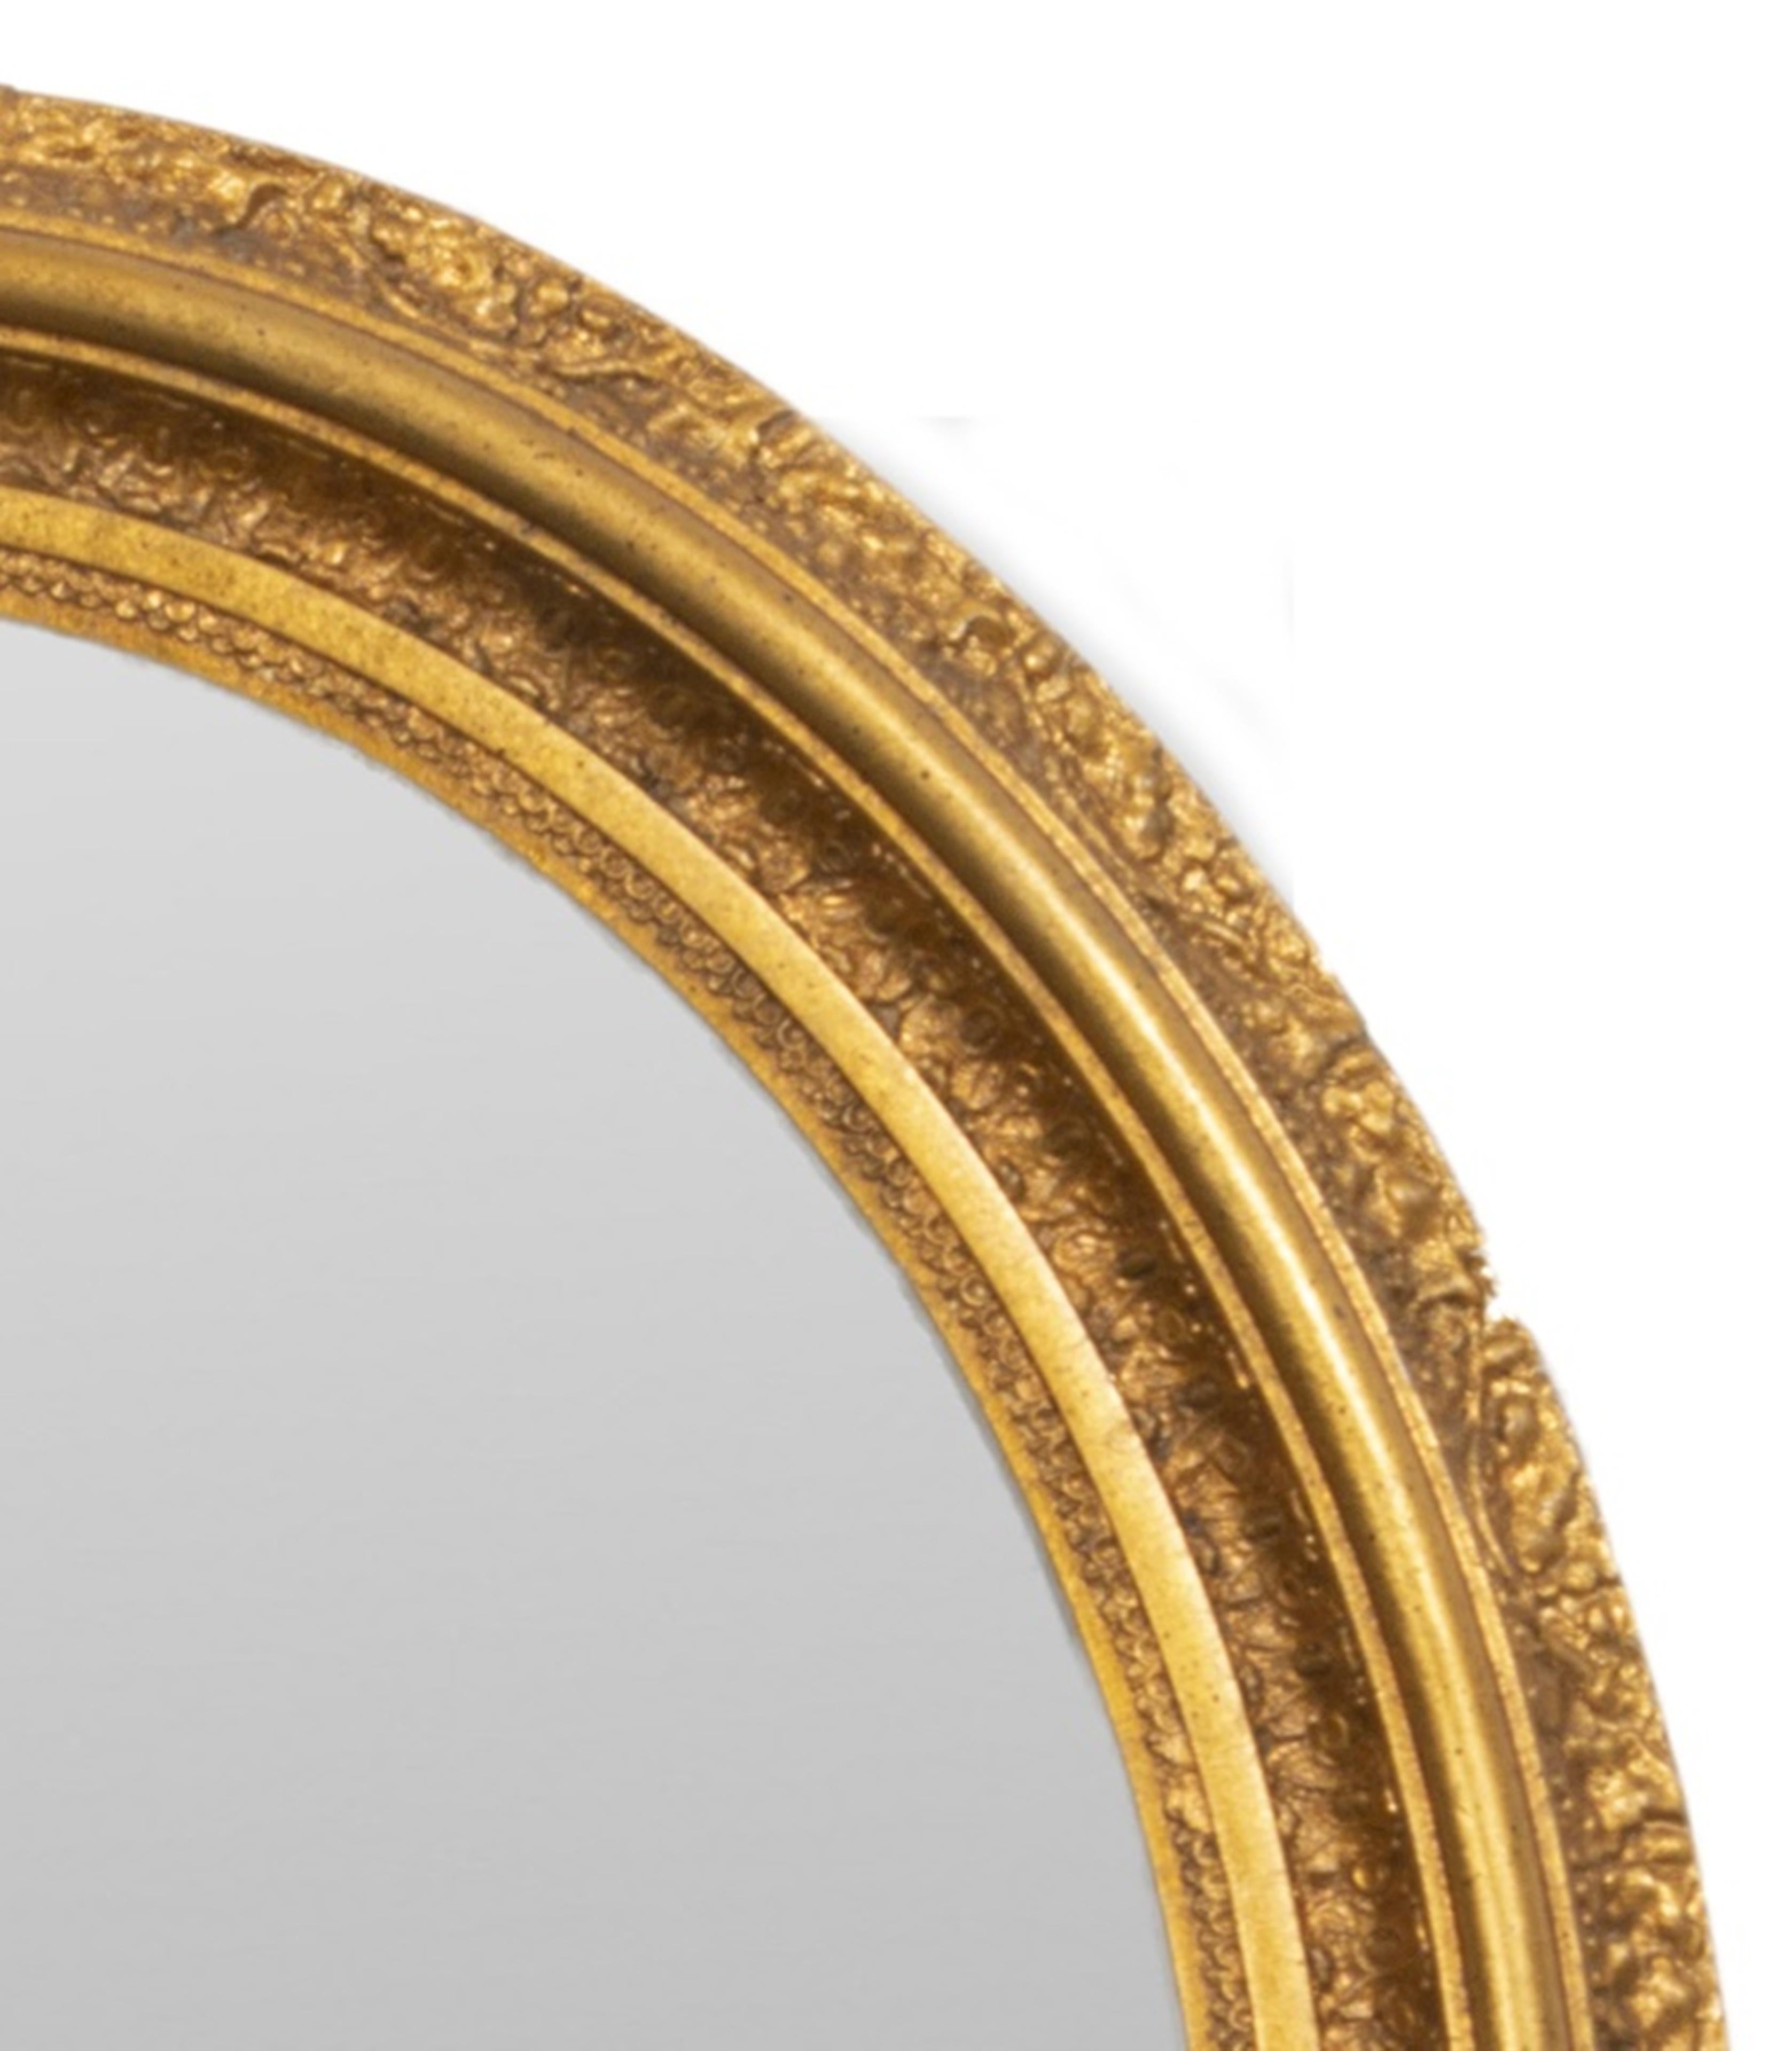 Miroir ovale en bois doré de style néo-rococo. Provenance : Propriété d'une succession de 1199 Park Ave
Dimensions 30,5